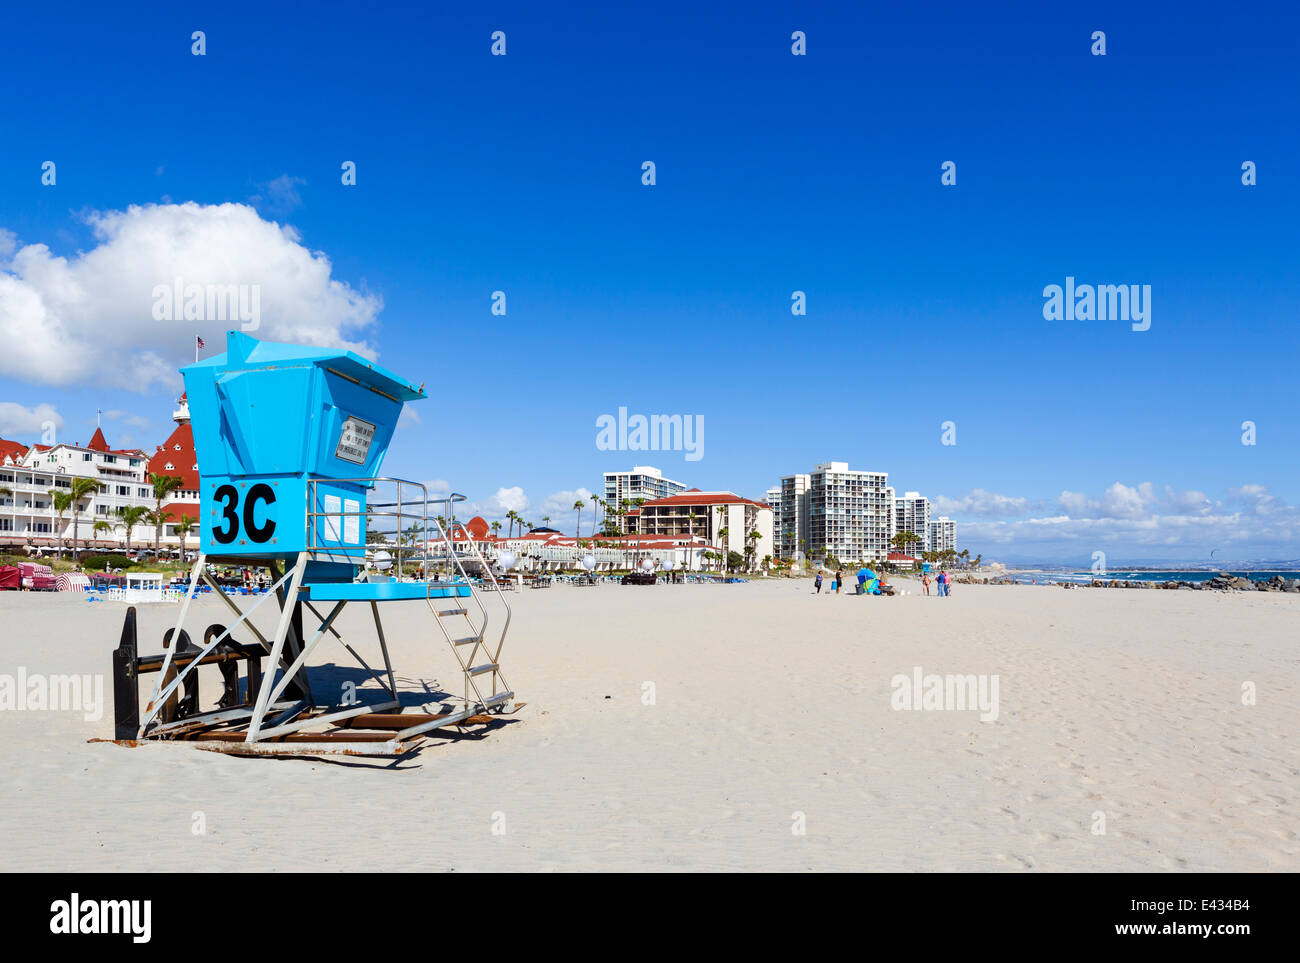 La plage en face de l'hôtel del Coronado, Coronado Beach, San Diego, California, USA Banque D'Images